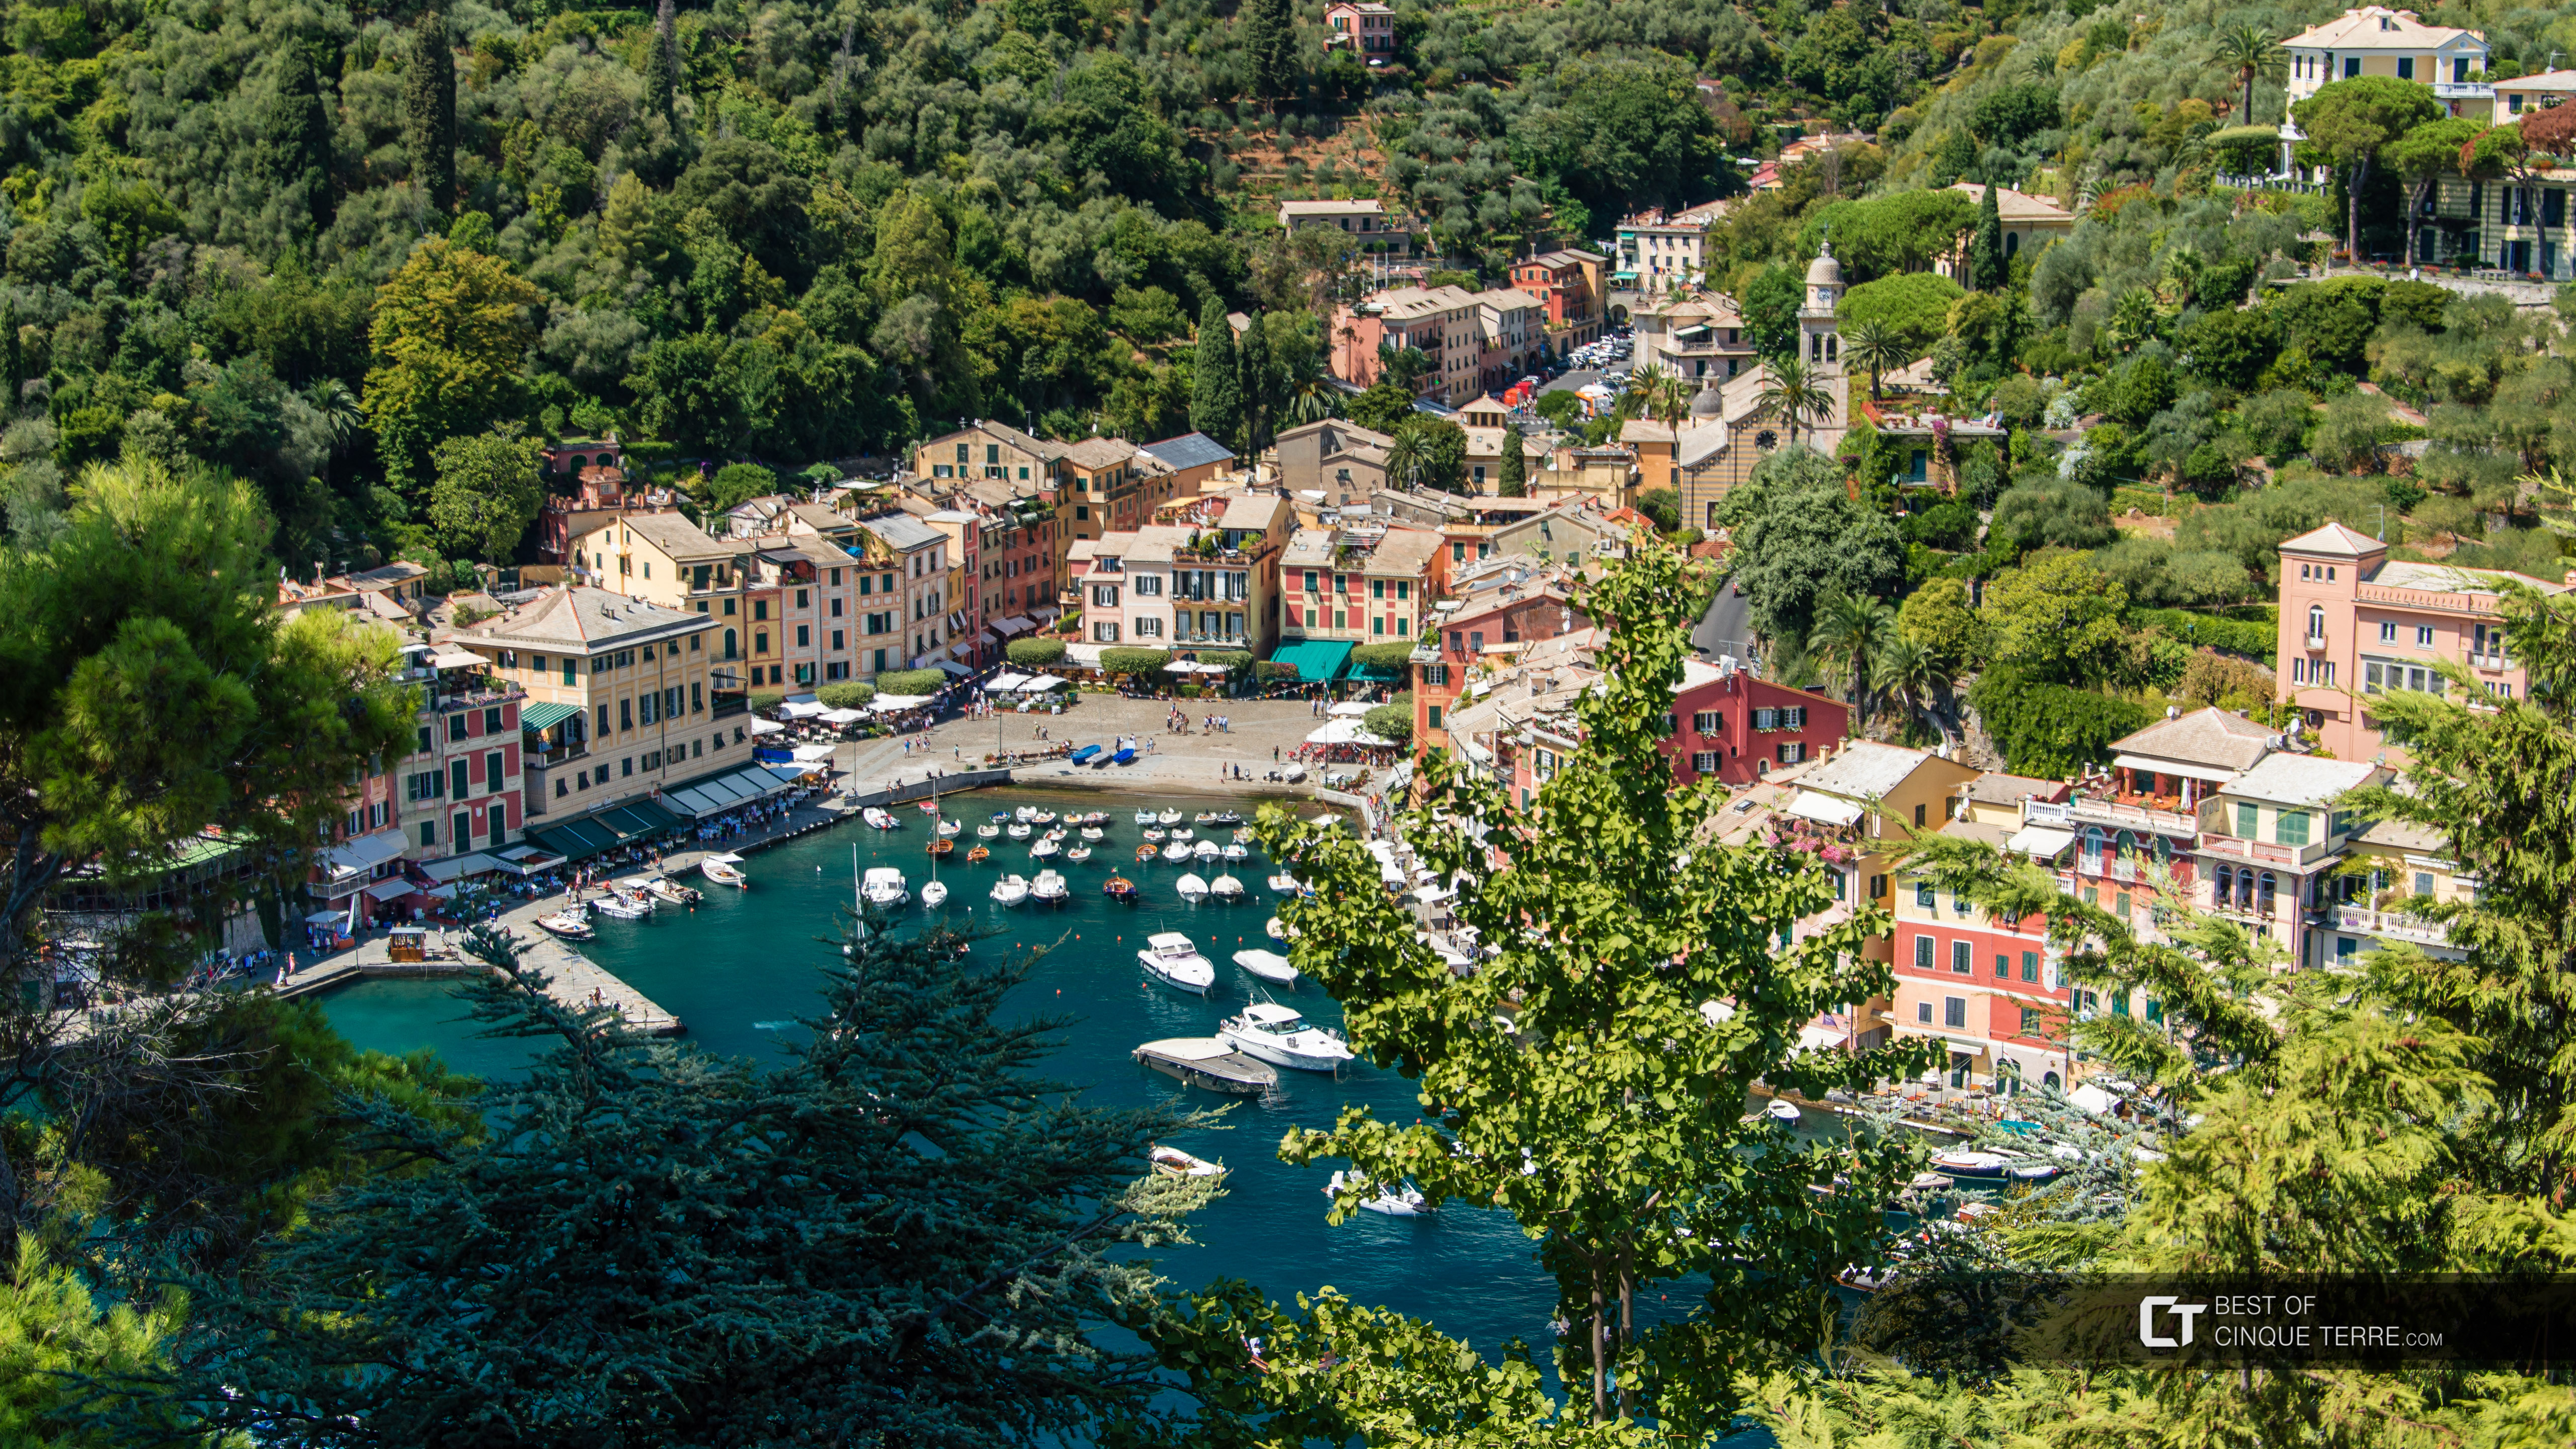 Vista desde la bahía del castillo Brown, Portofino, Italia